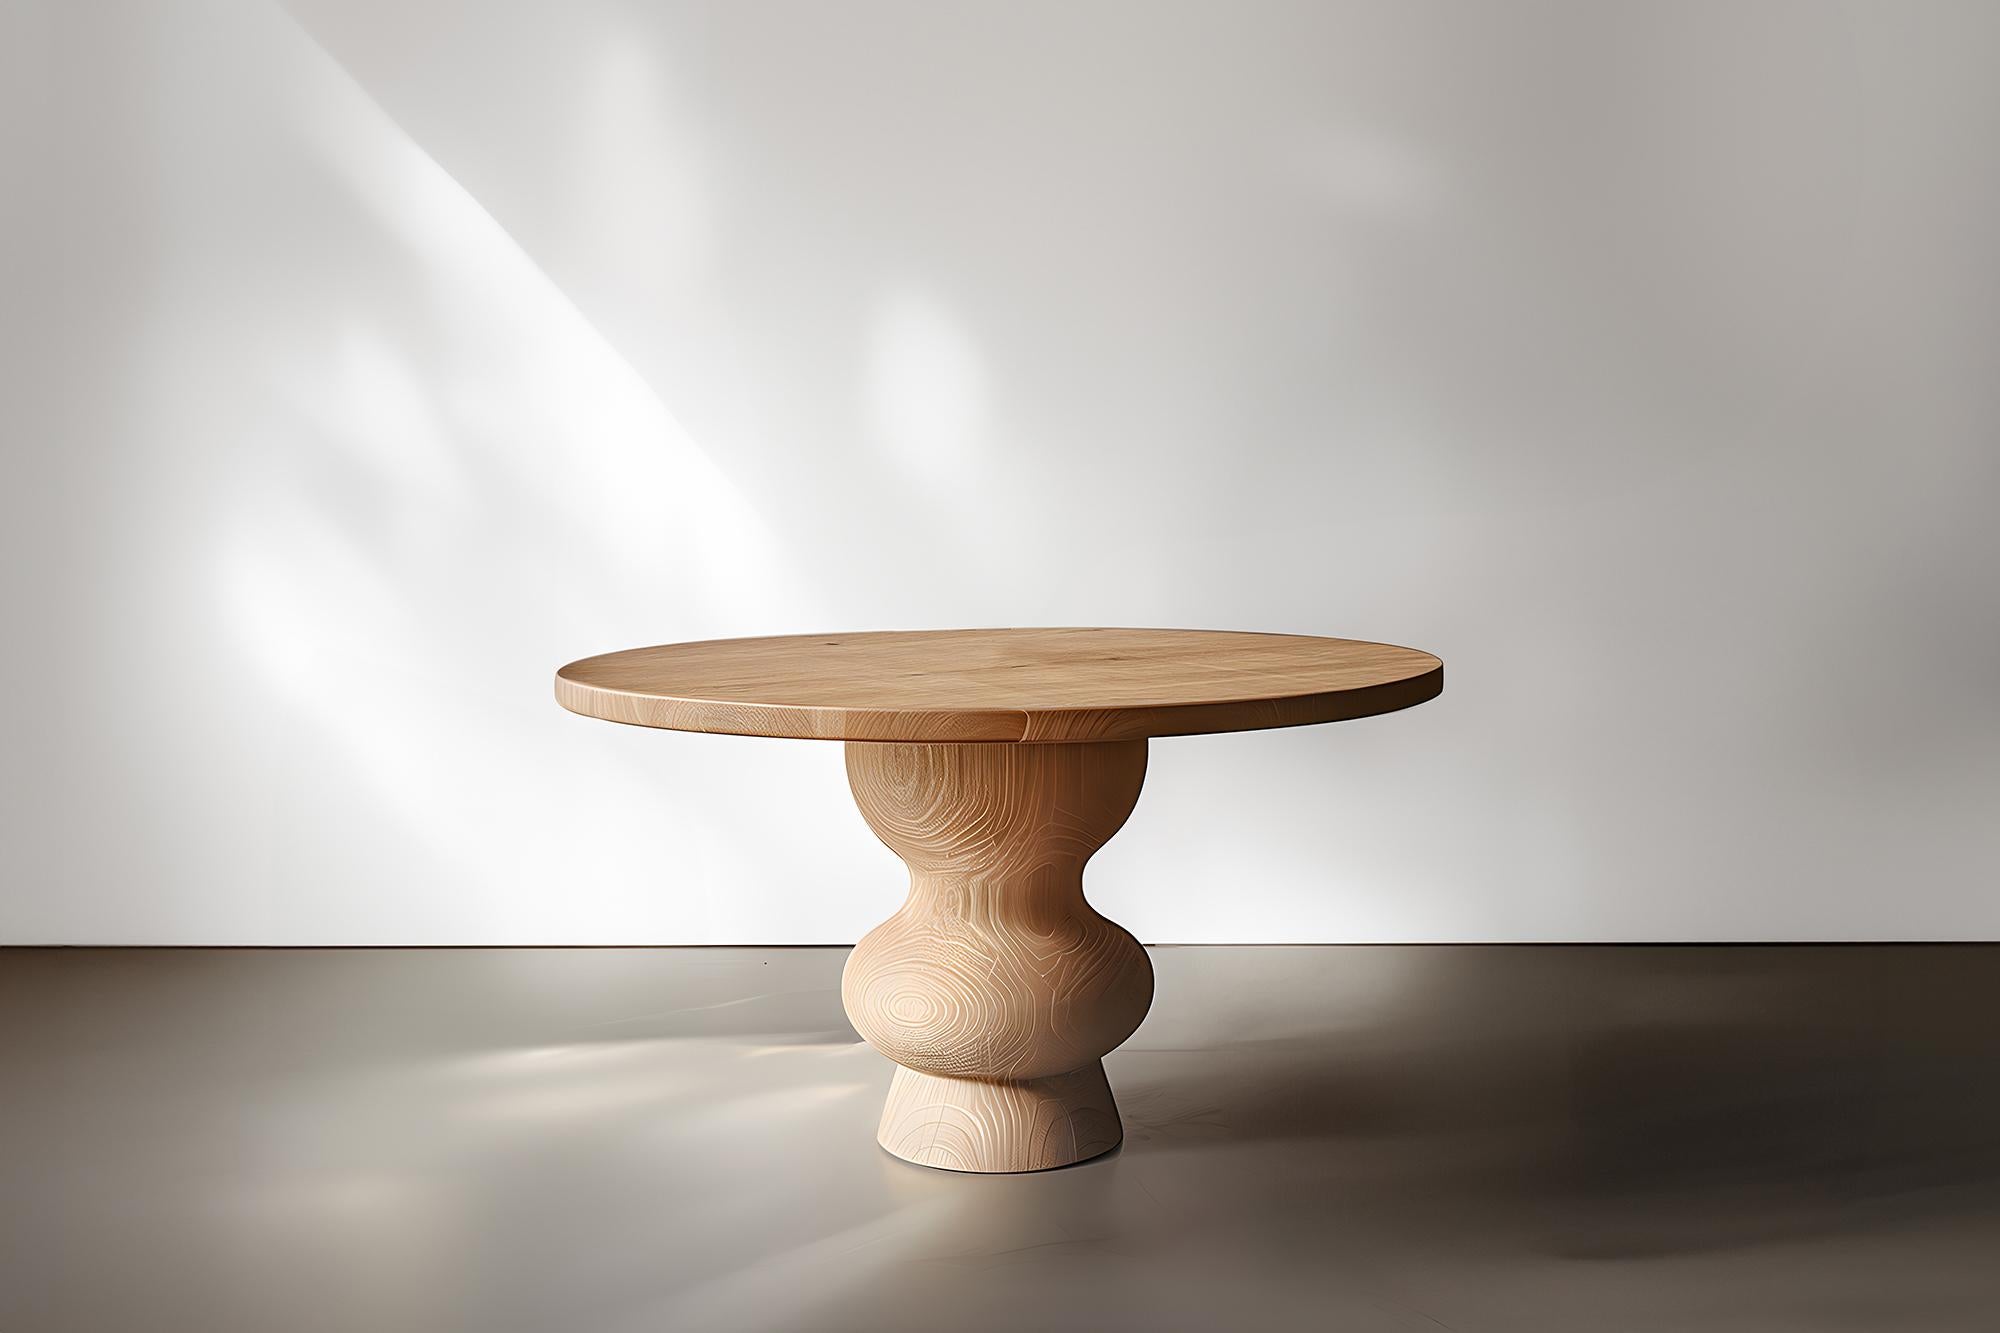 Servez avec style avec les tables de service Socle, No13 en Wood Wood solide de NONO

--

Voici la 